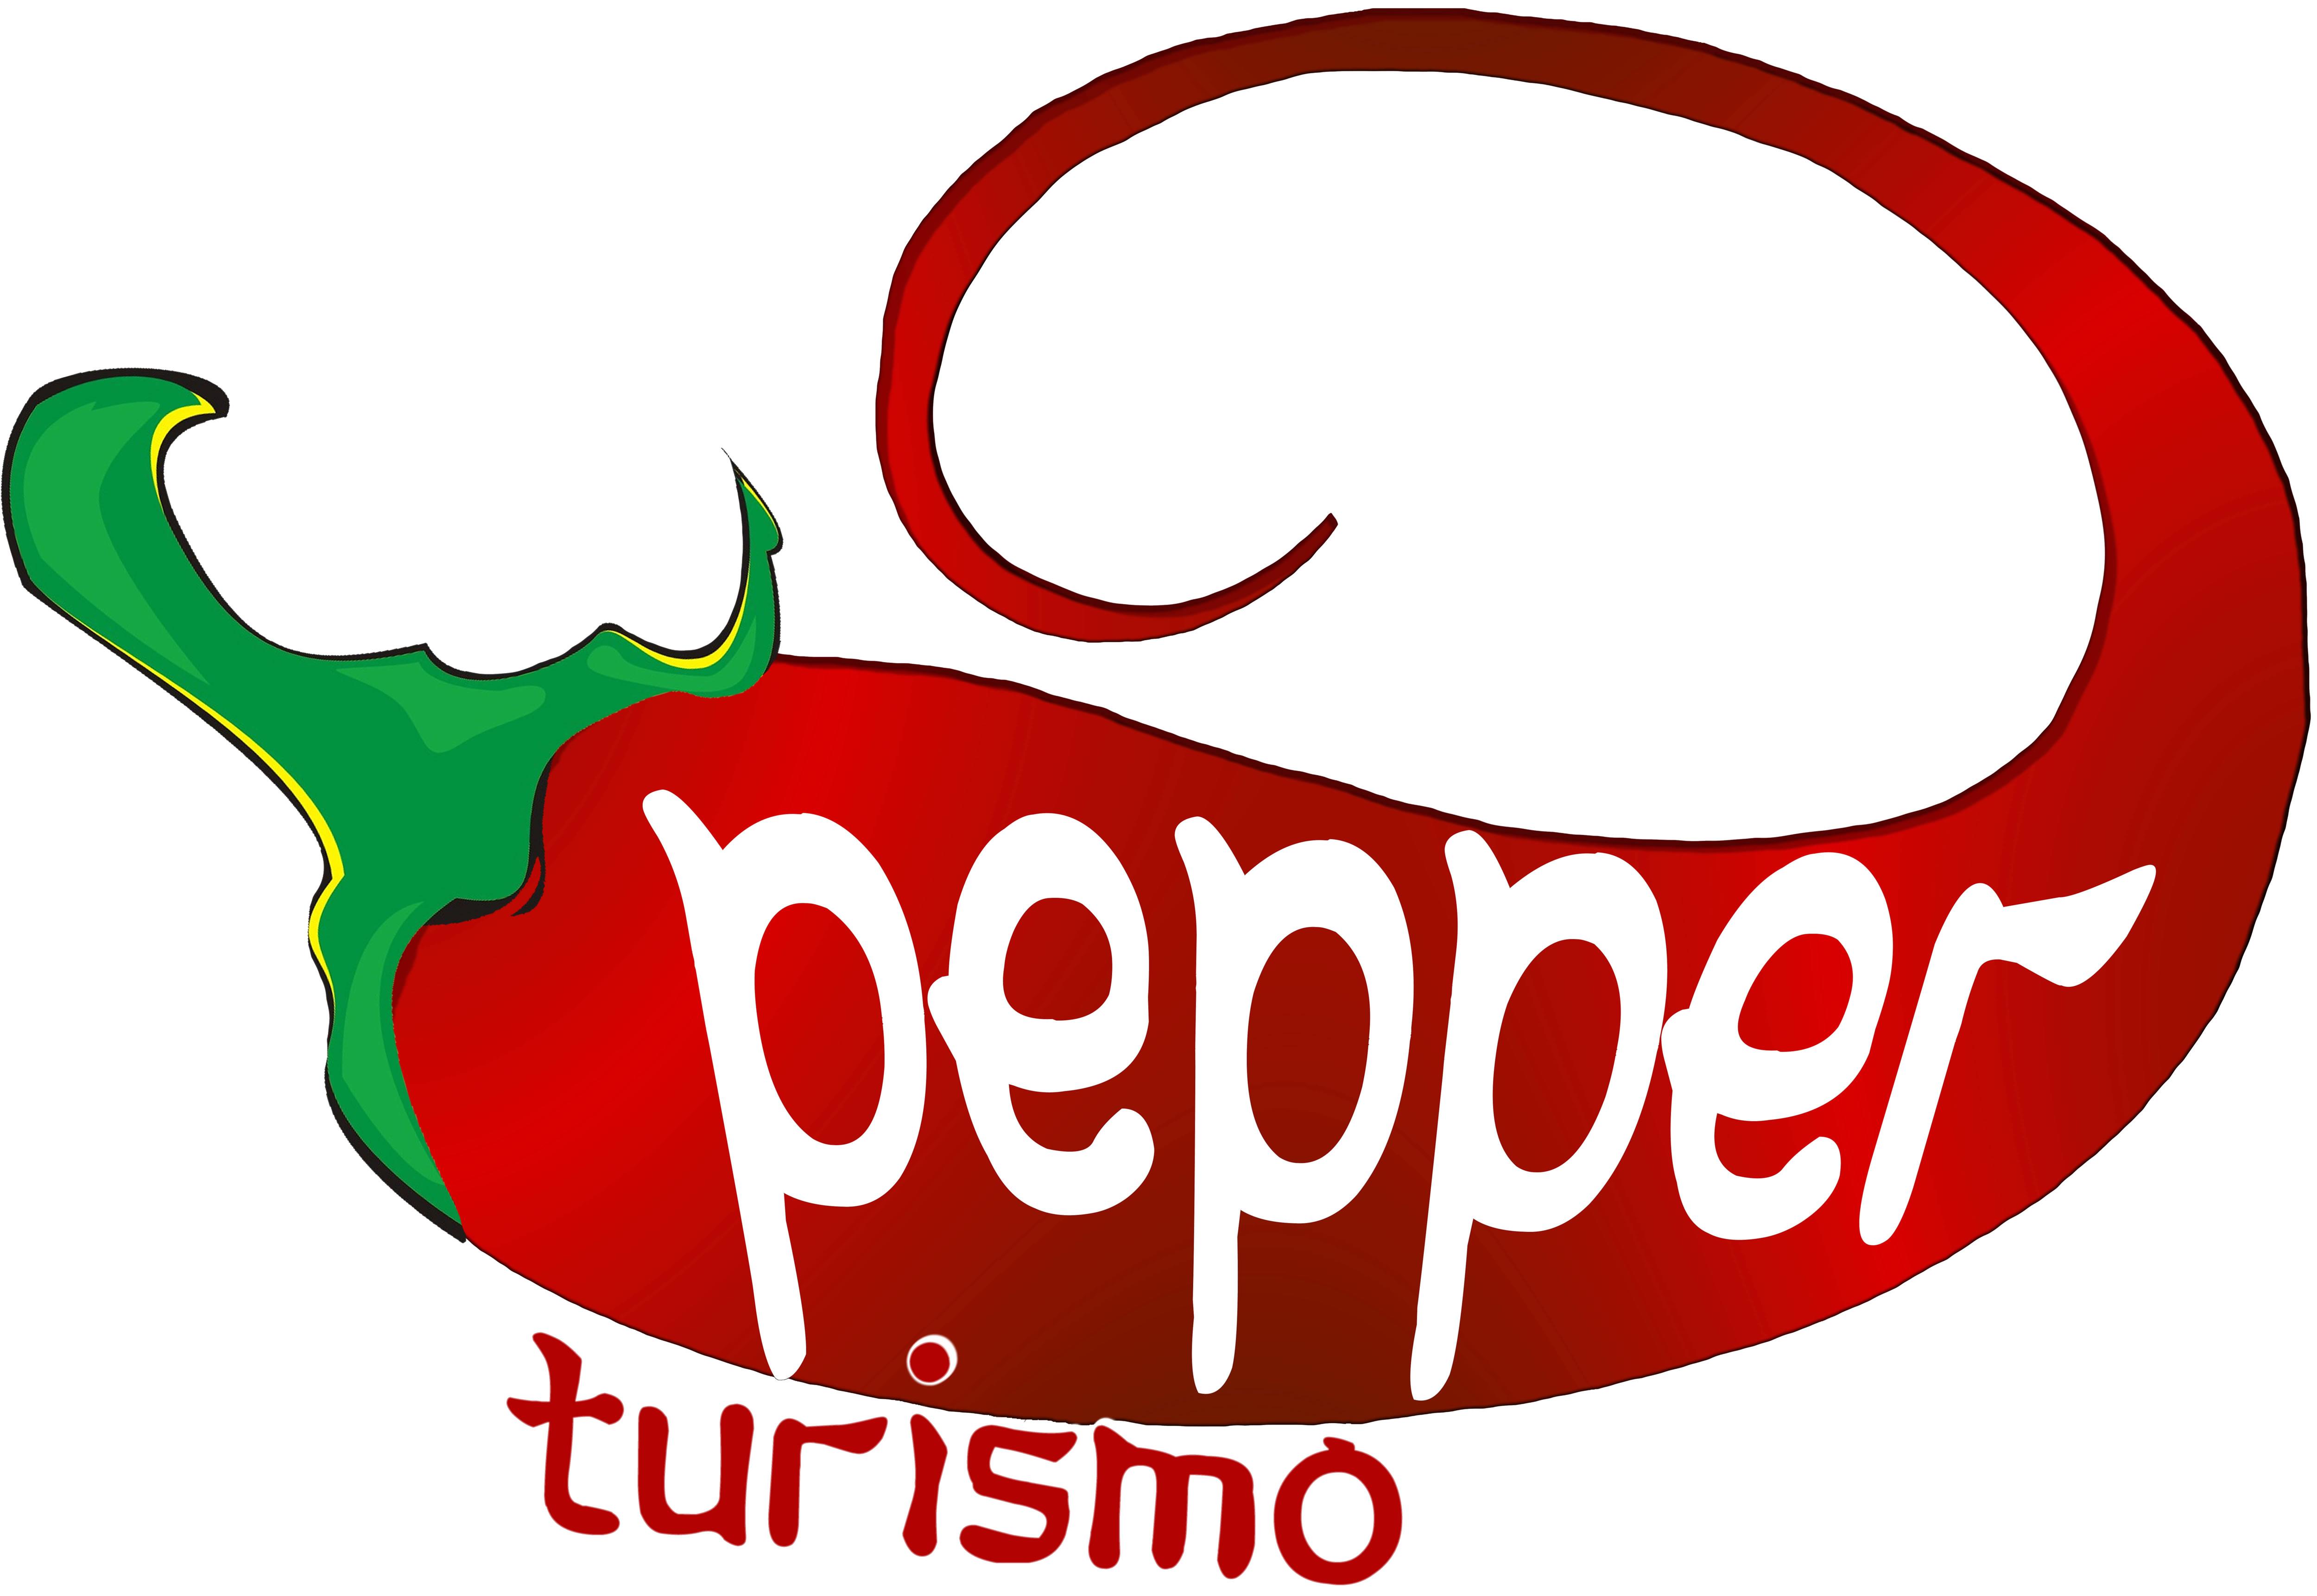 Pepper Turismo